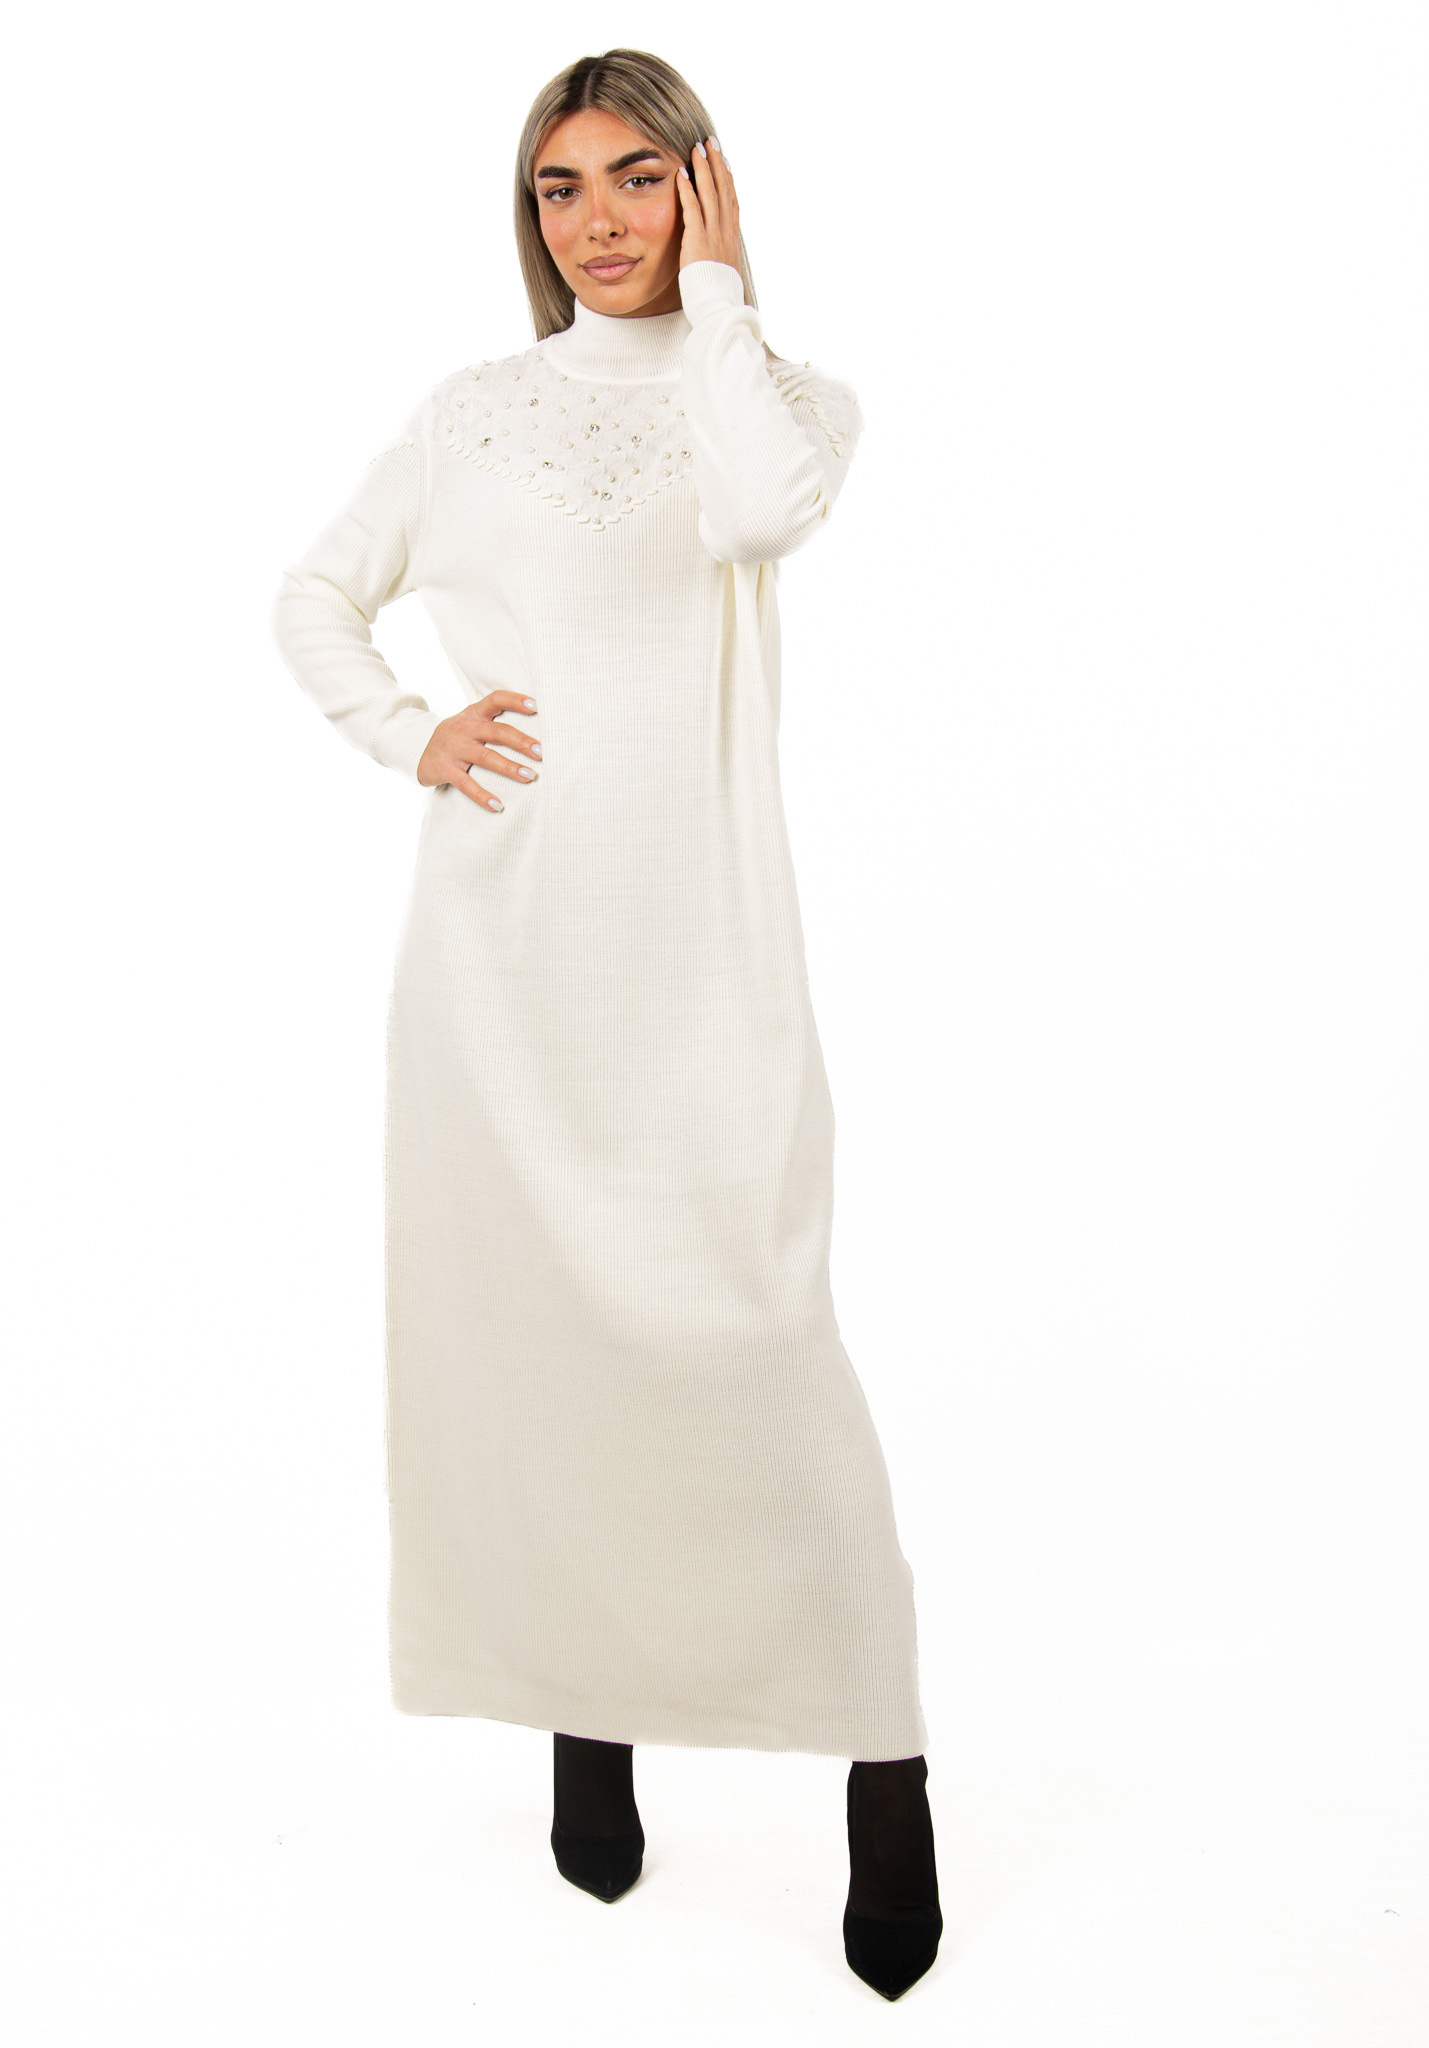 Φόρεμα Πλεκτό με Στρας Εκρού | EllenBoutique